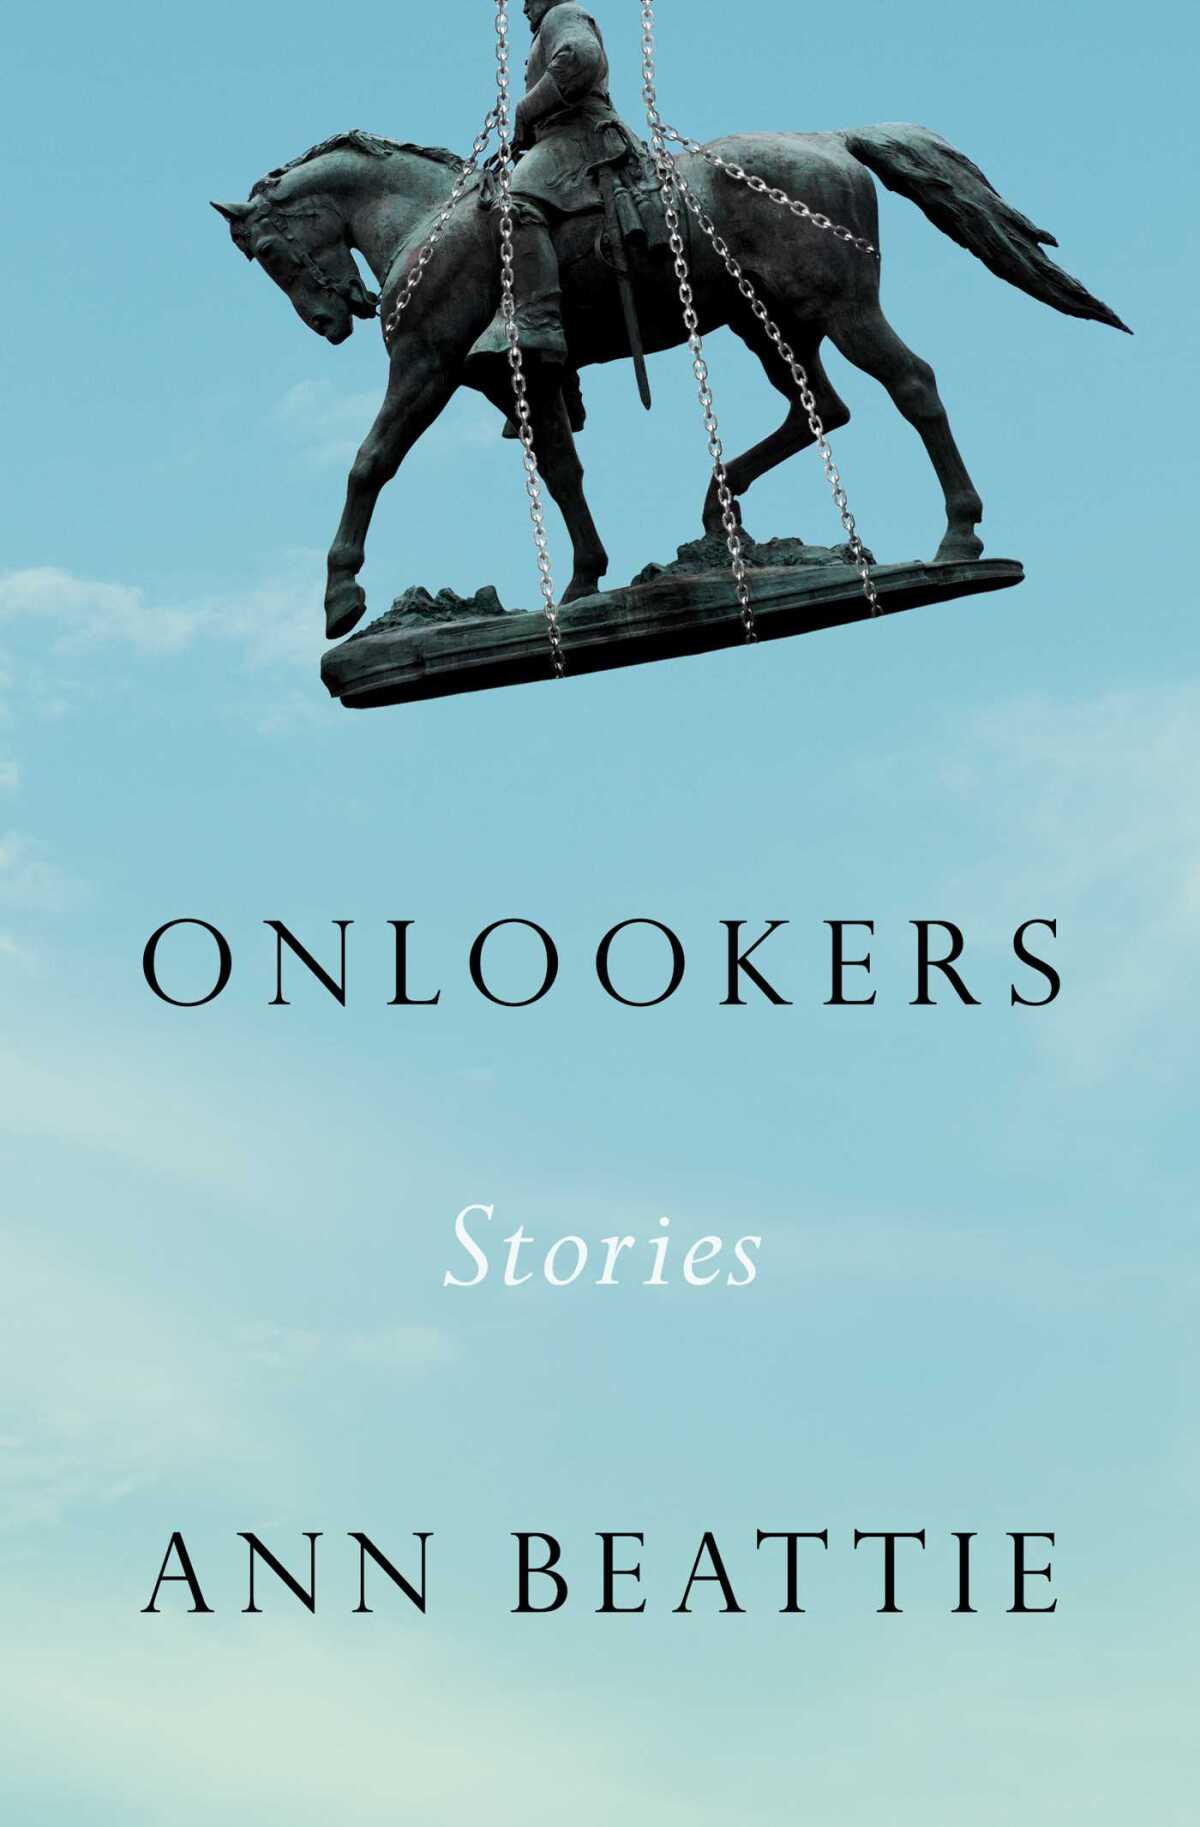 "Onlookers," by Ann Beattie